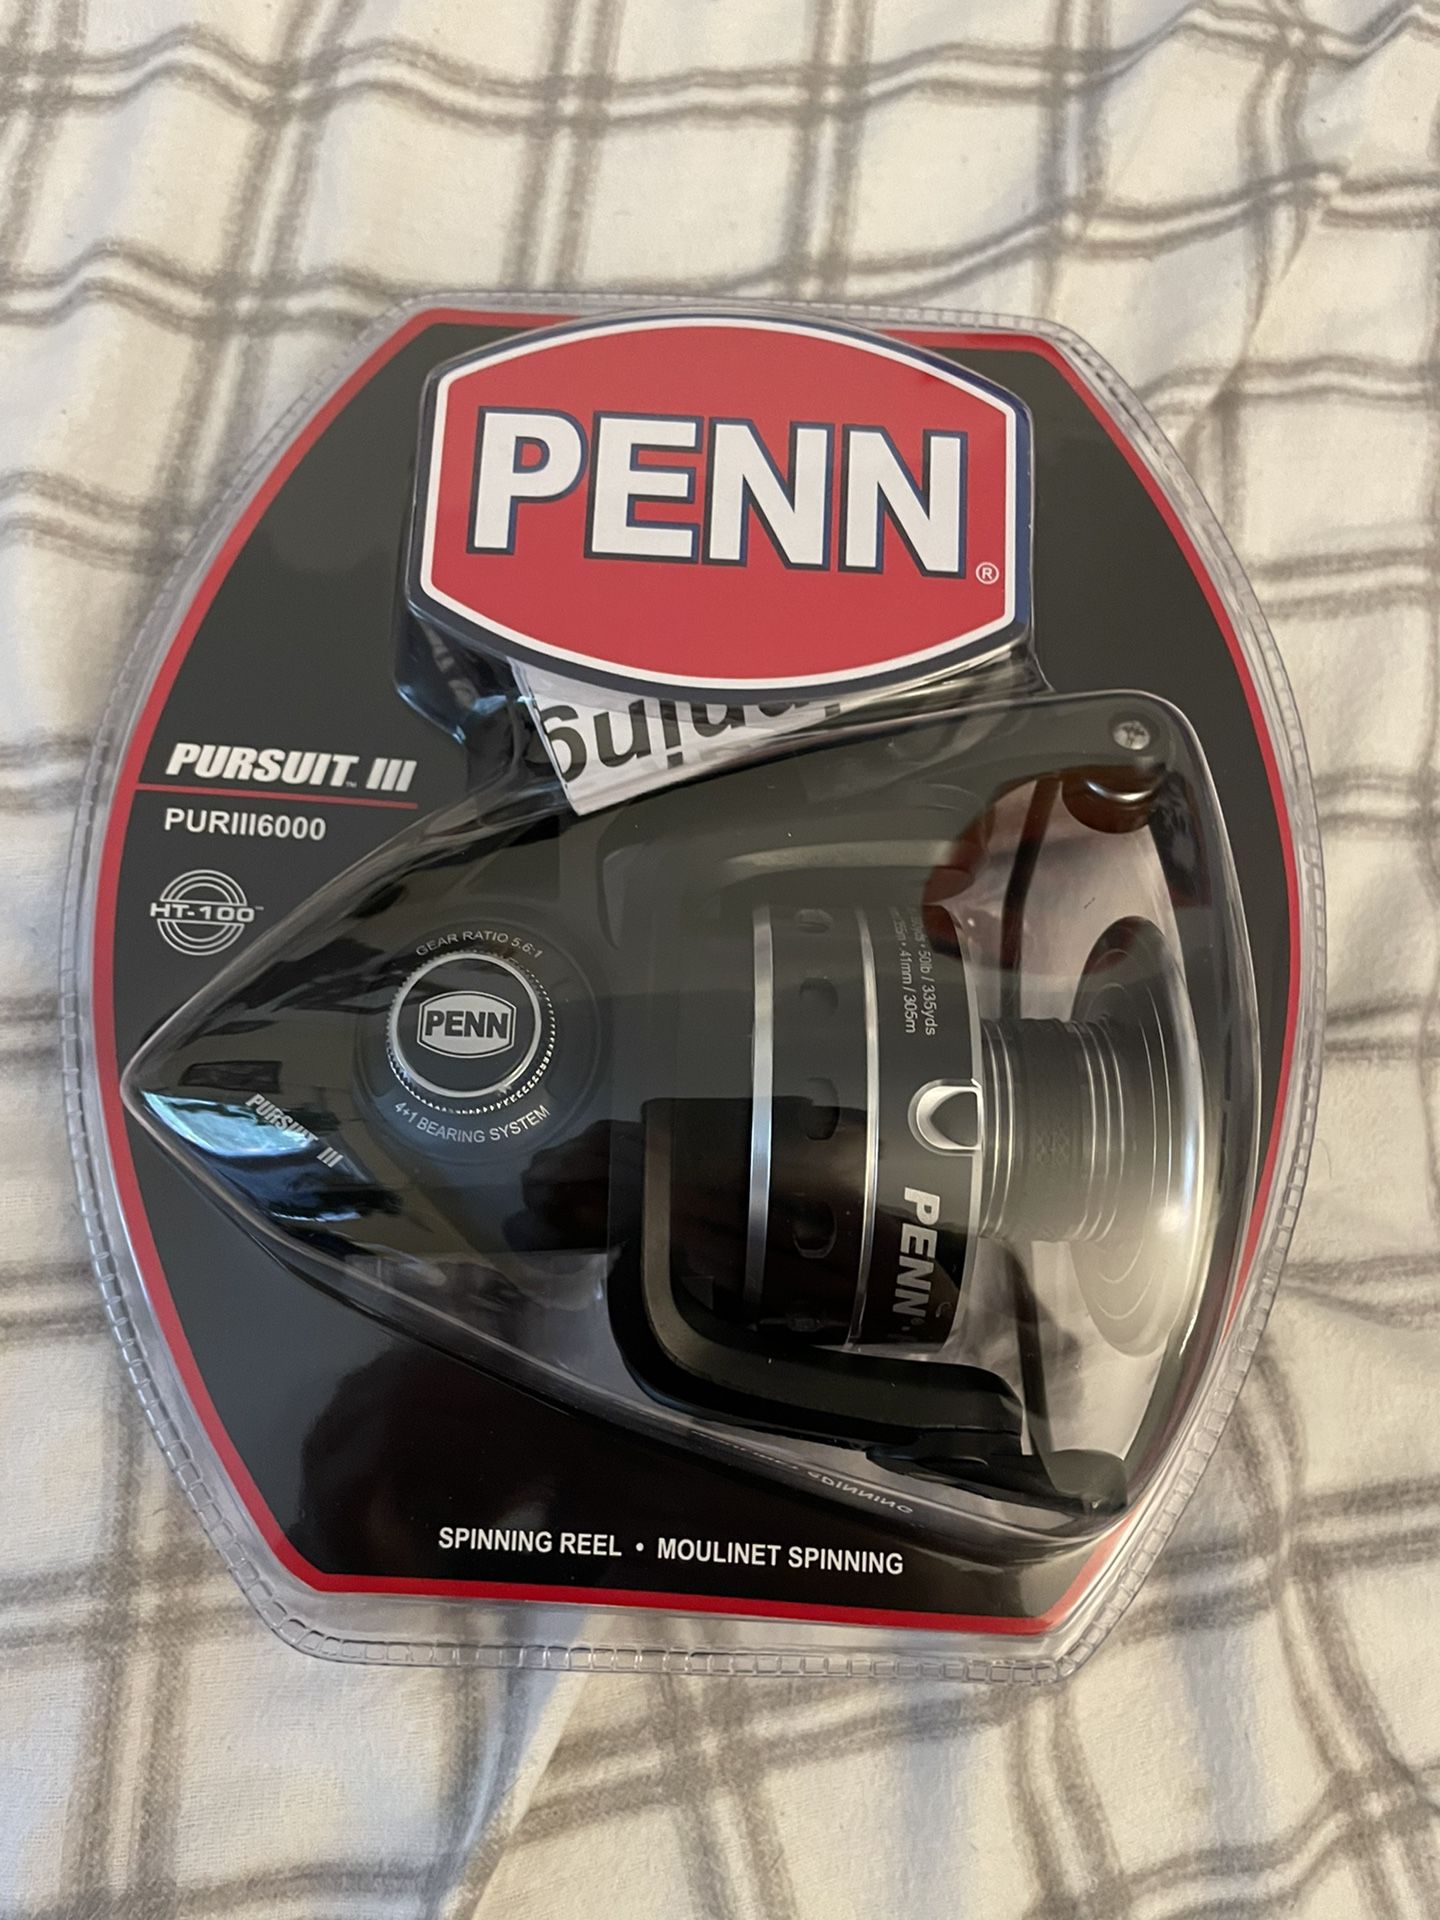 Penn Pursuit III 6000 Size Fishing Reel